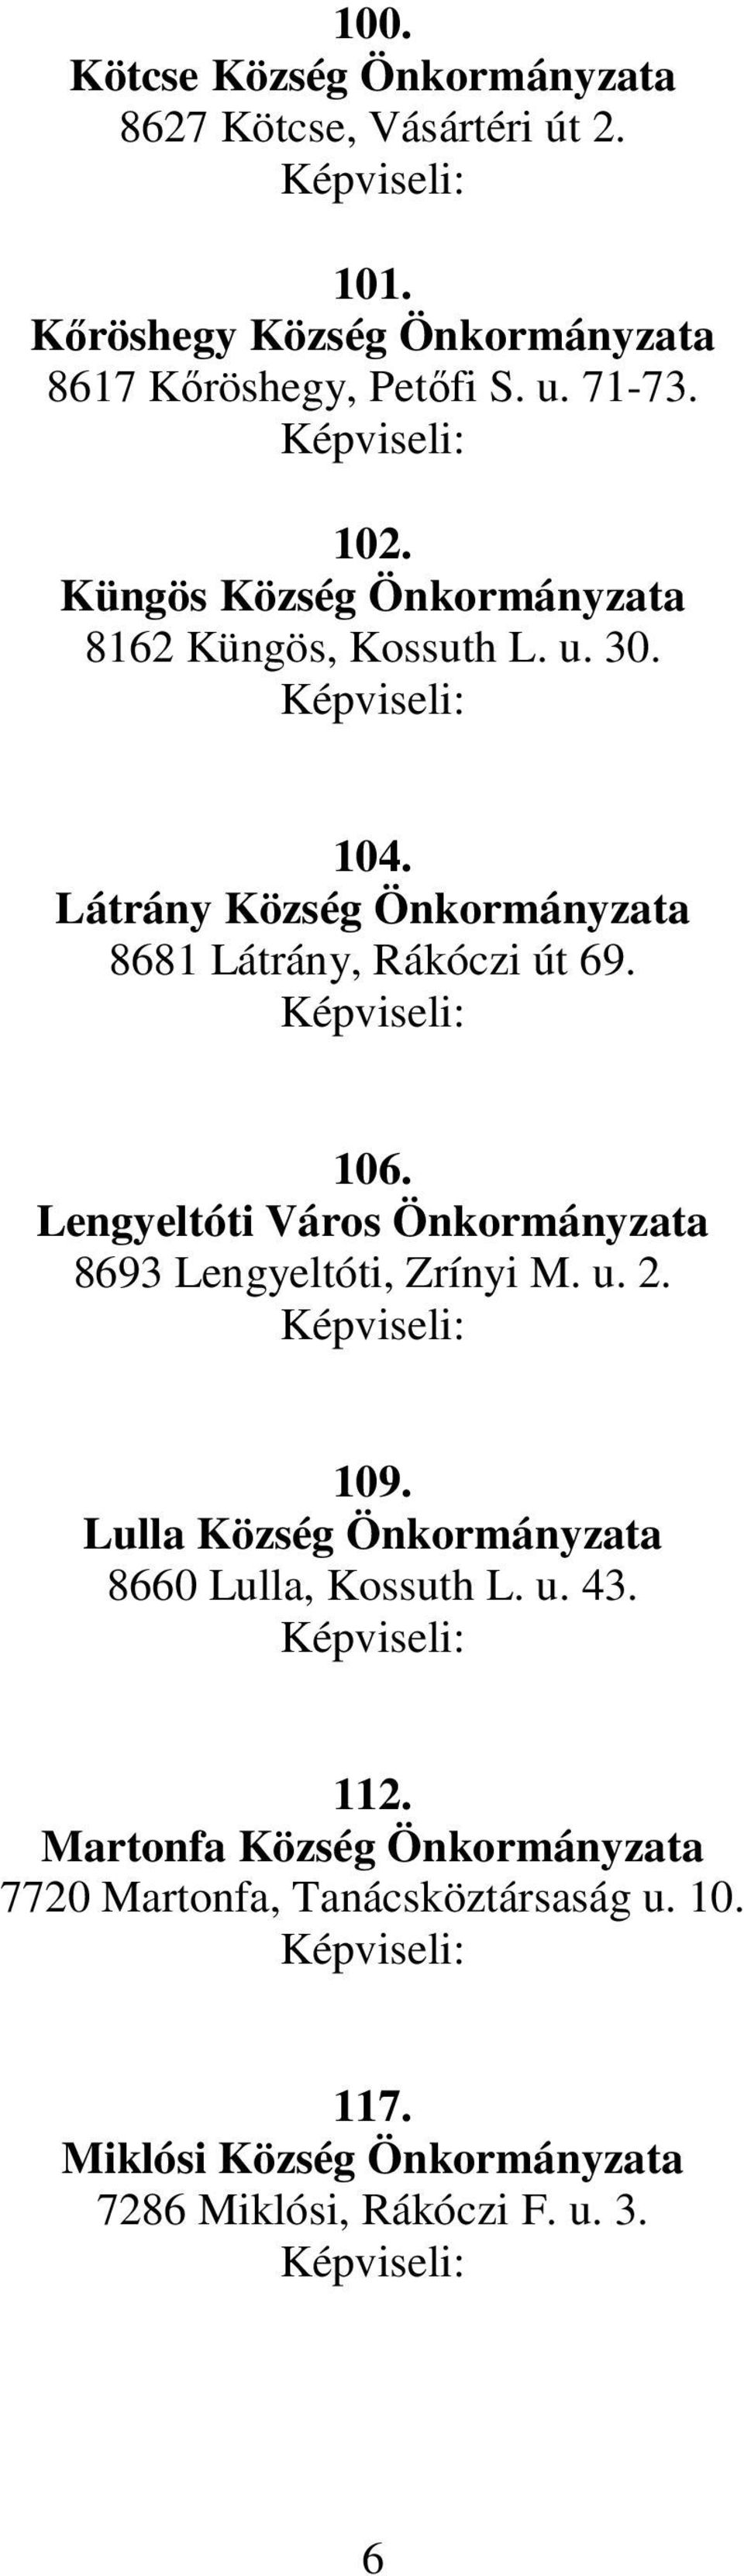 Lengyeltóti Város Önkormányzata 8693 Lengyeltóti, Zrínyi M. u. 2. 109. Lulla Község Önkormányzata 8660 Lulla, Kossuth L. u. 43. 112.